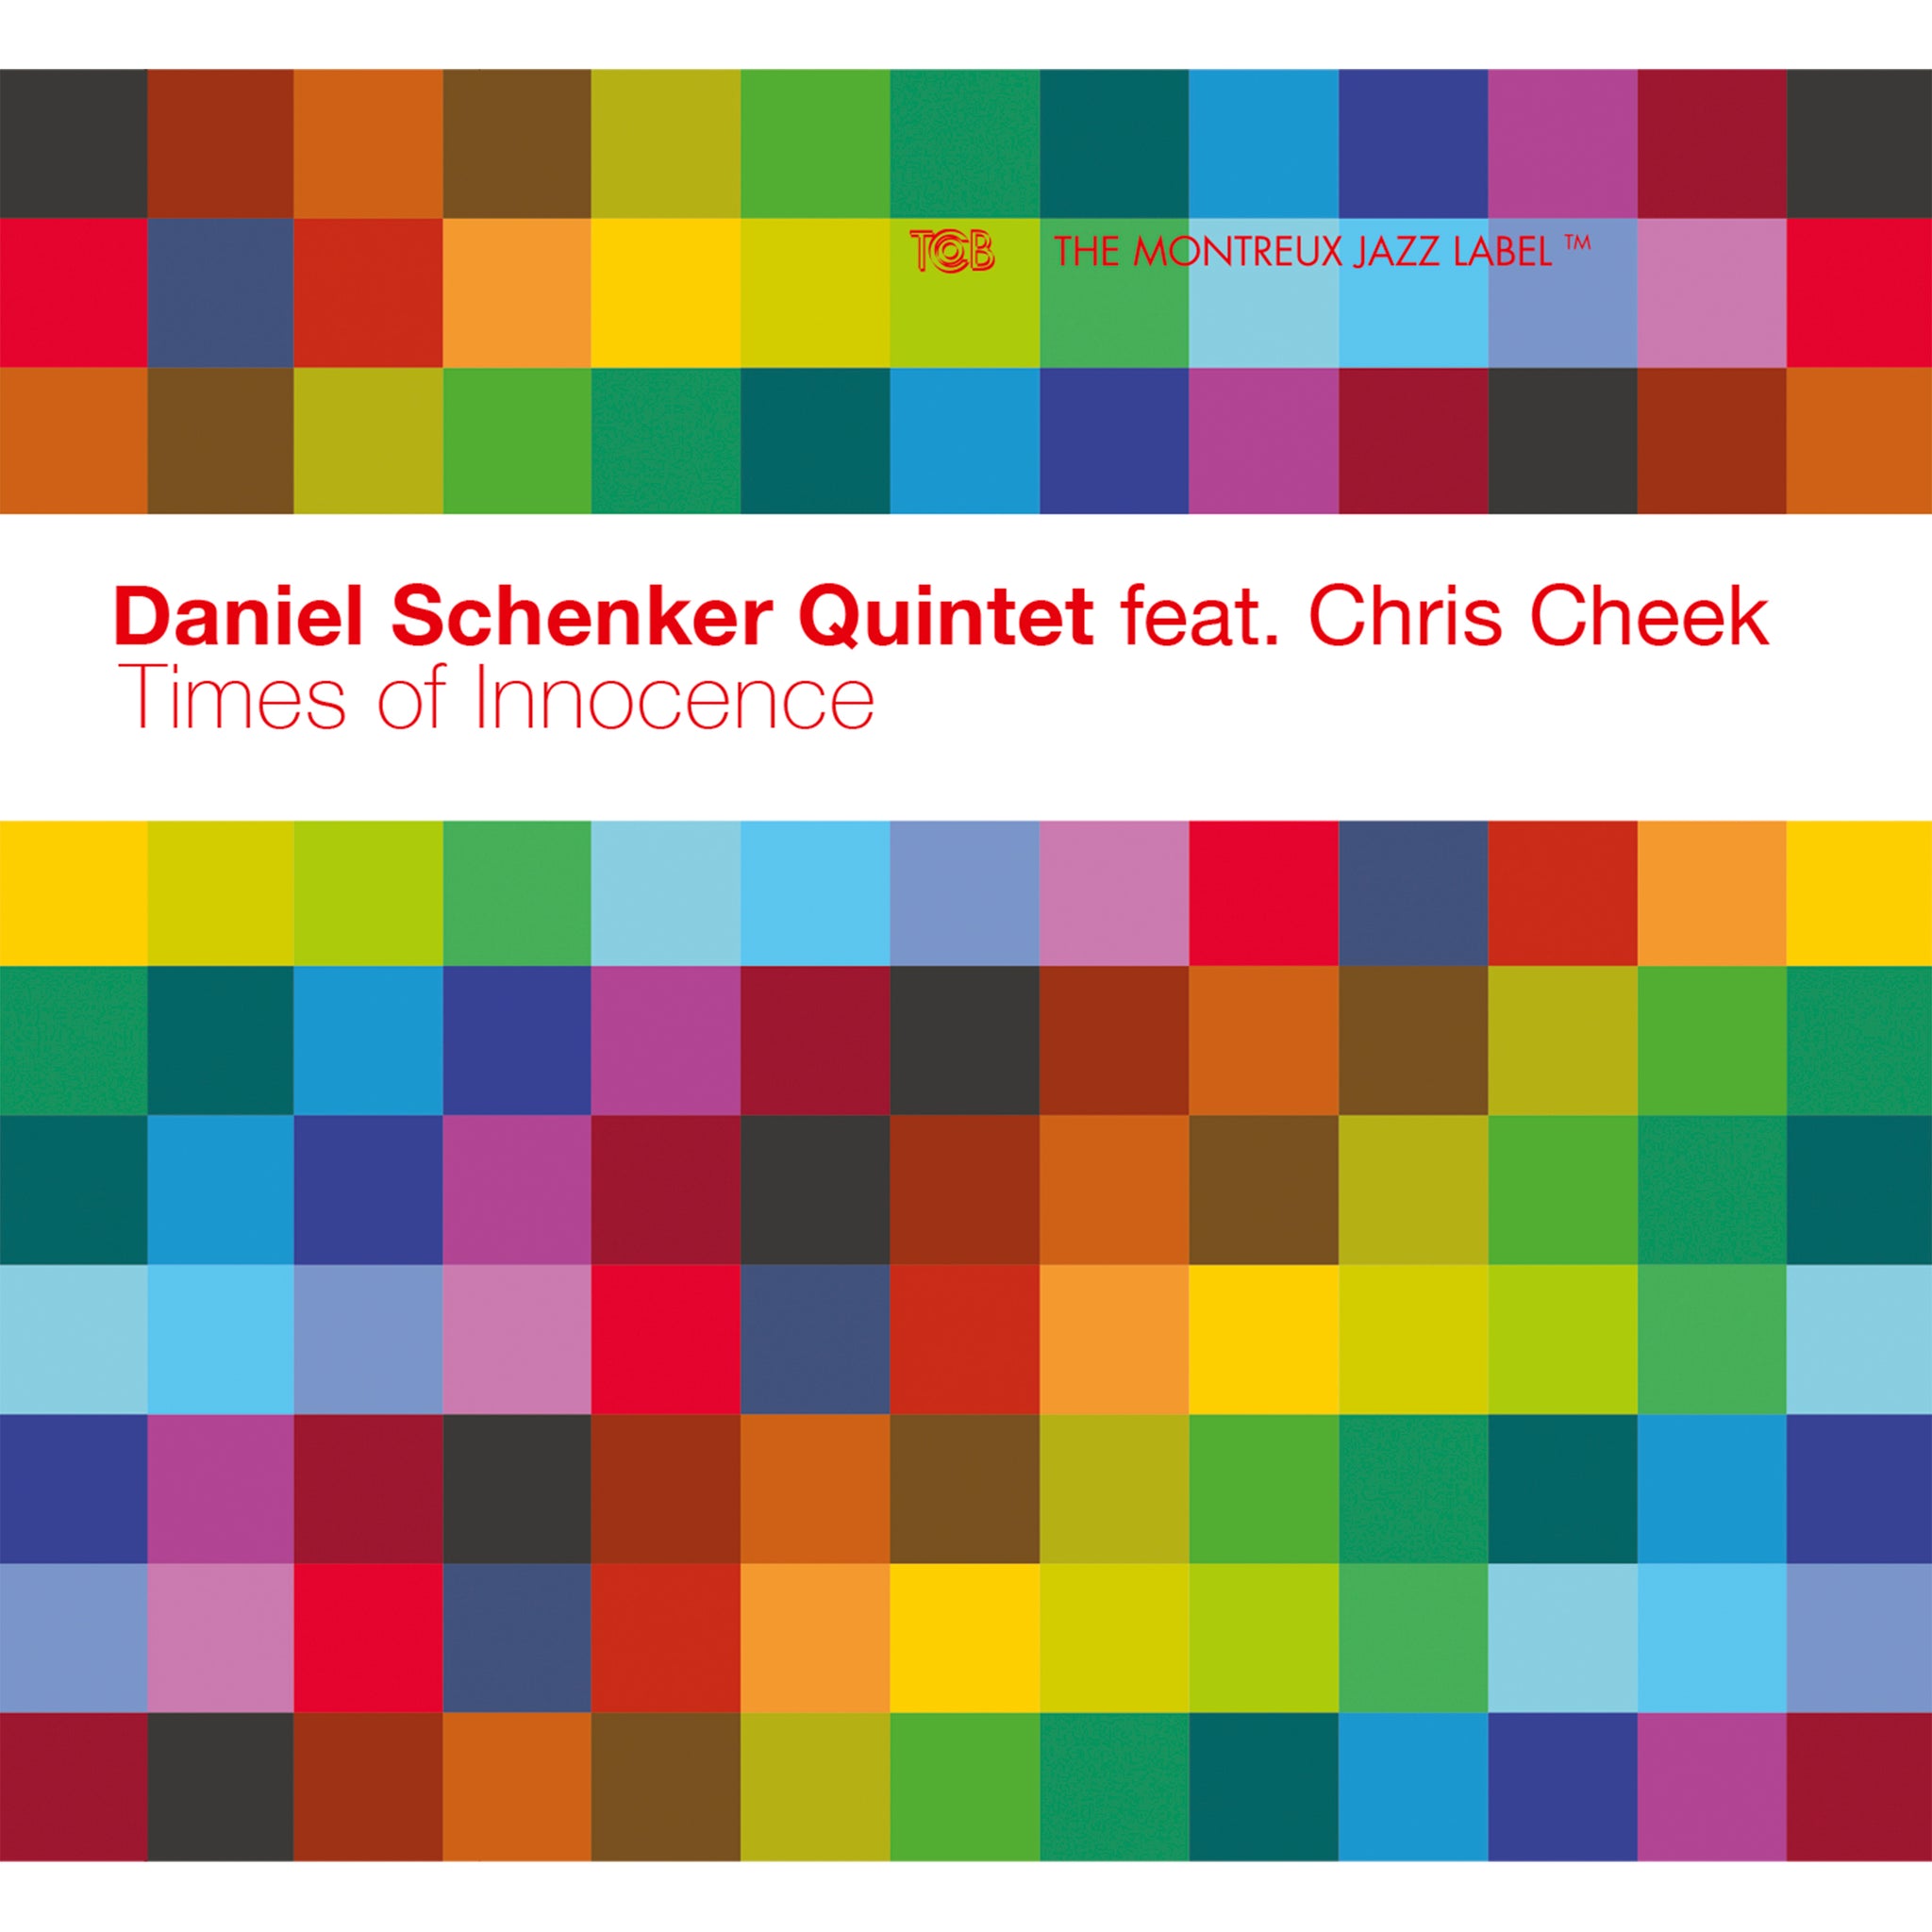 Times of Innocence / Daniel Schenker Quintet feat. Chris Cheek